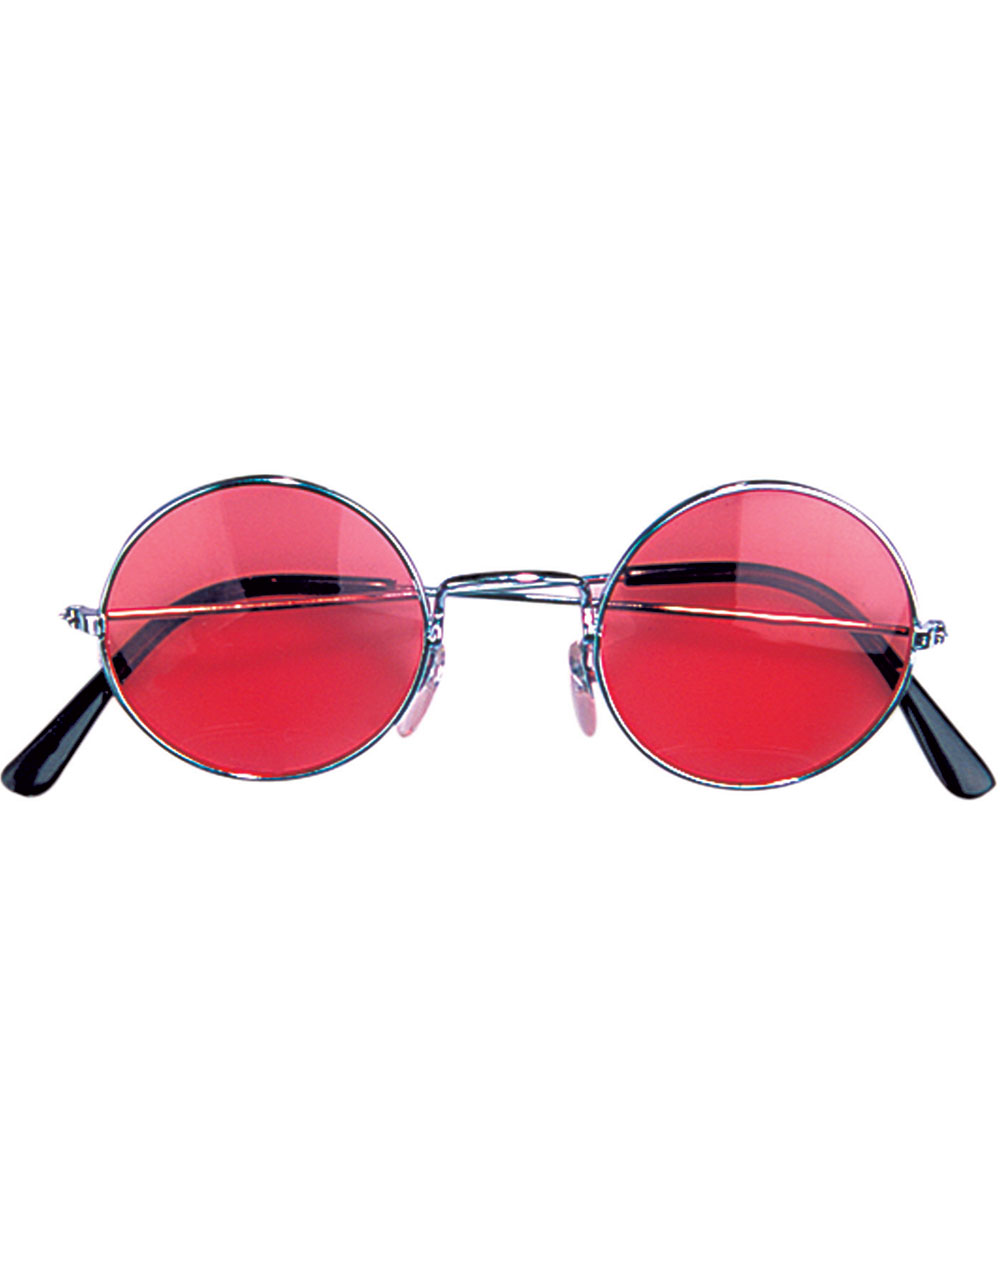 Sølvfarvede Briller med Rødt Glas - Disco - Kostumer efter Tema Kostumer KARNEVAL